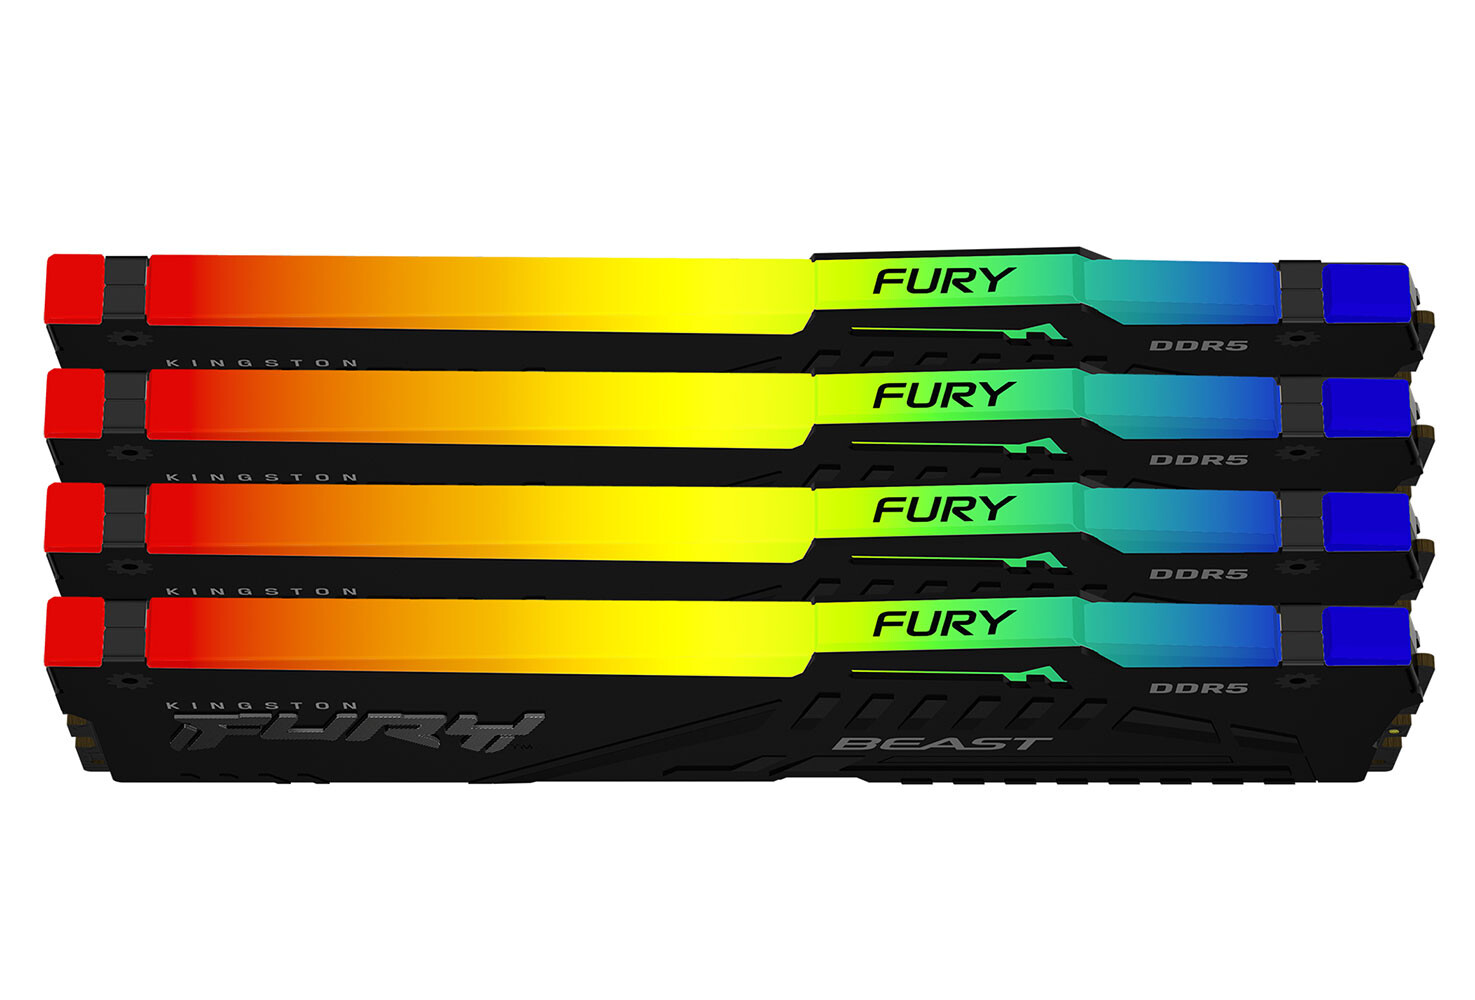 Kingston FURY Beast DDR5 RGB Announced With Enhanced RGB –